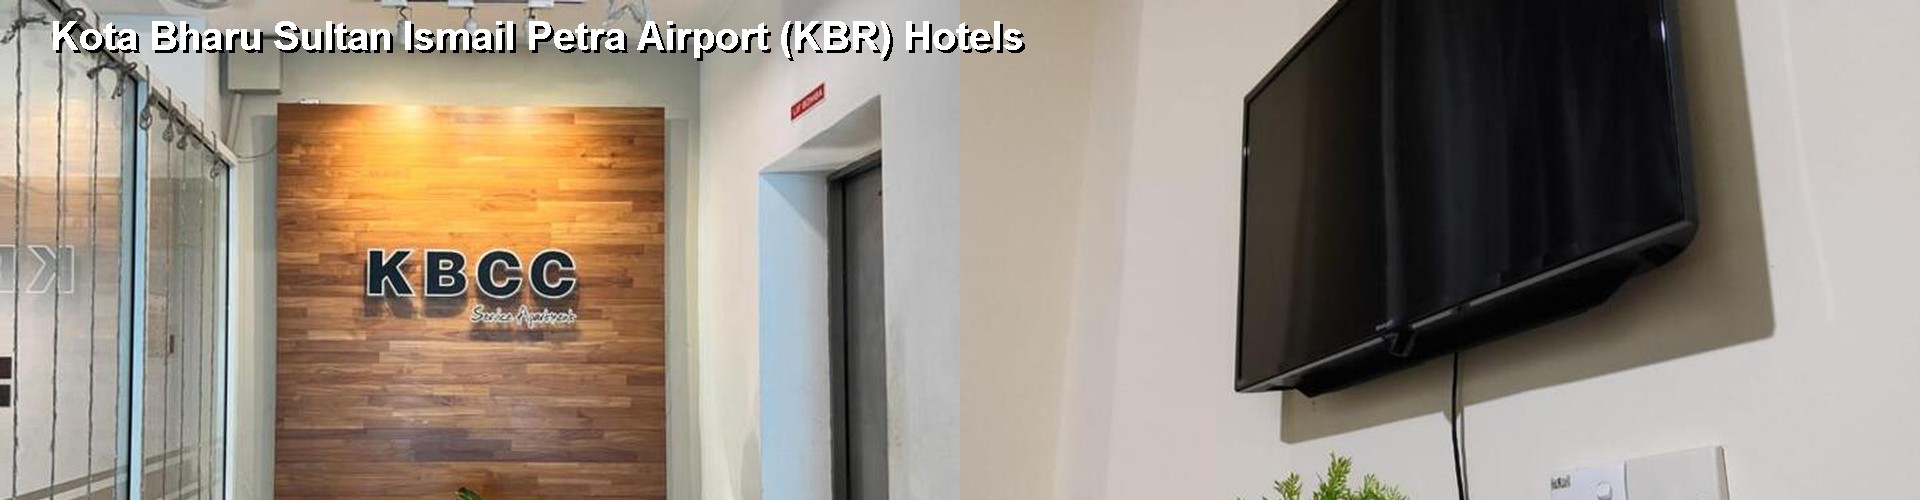 2 Best Hotels near Kota Bharu Sultan Ismail Petra Airport (KBR)